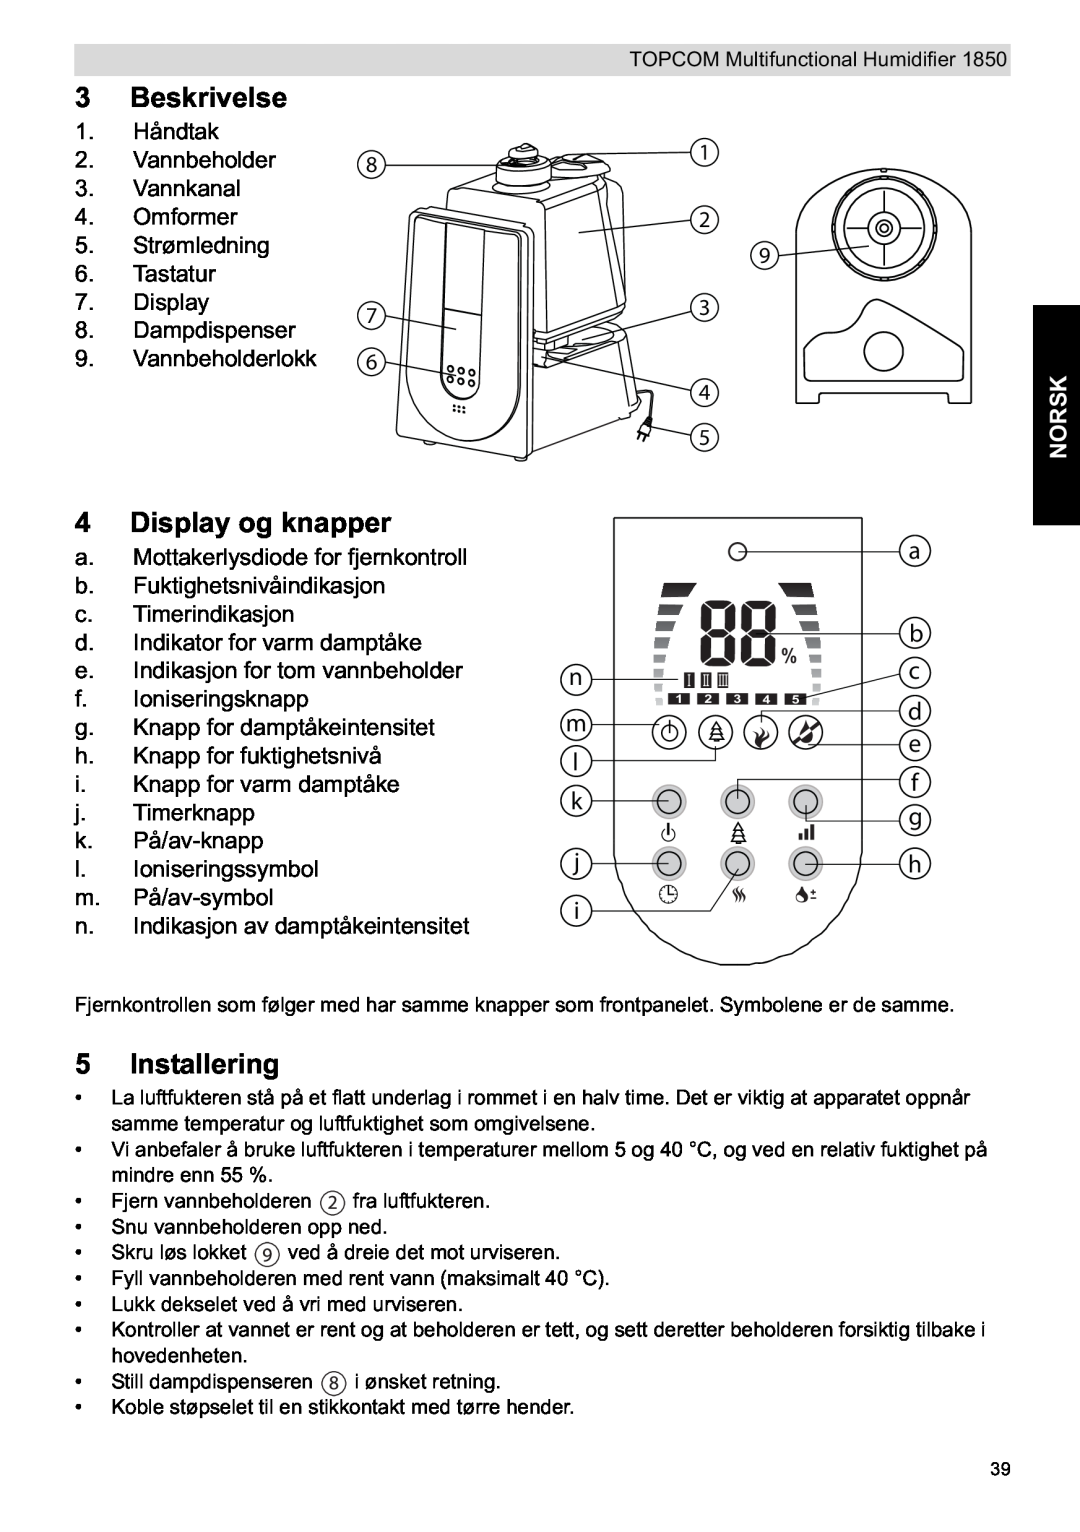 Topcom 1850 manual do utilizador Installering, Norsk, Beskrivelse, Display og knapper 